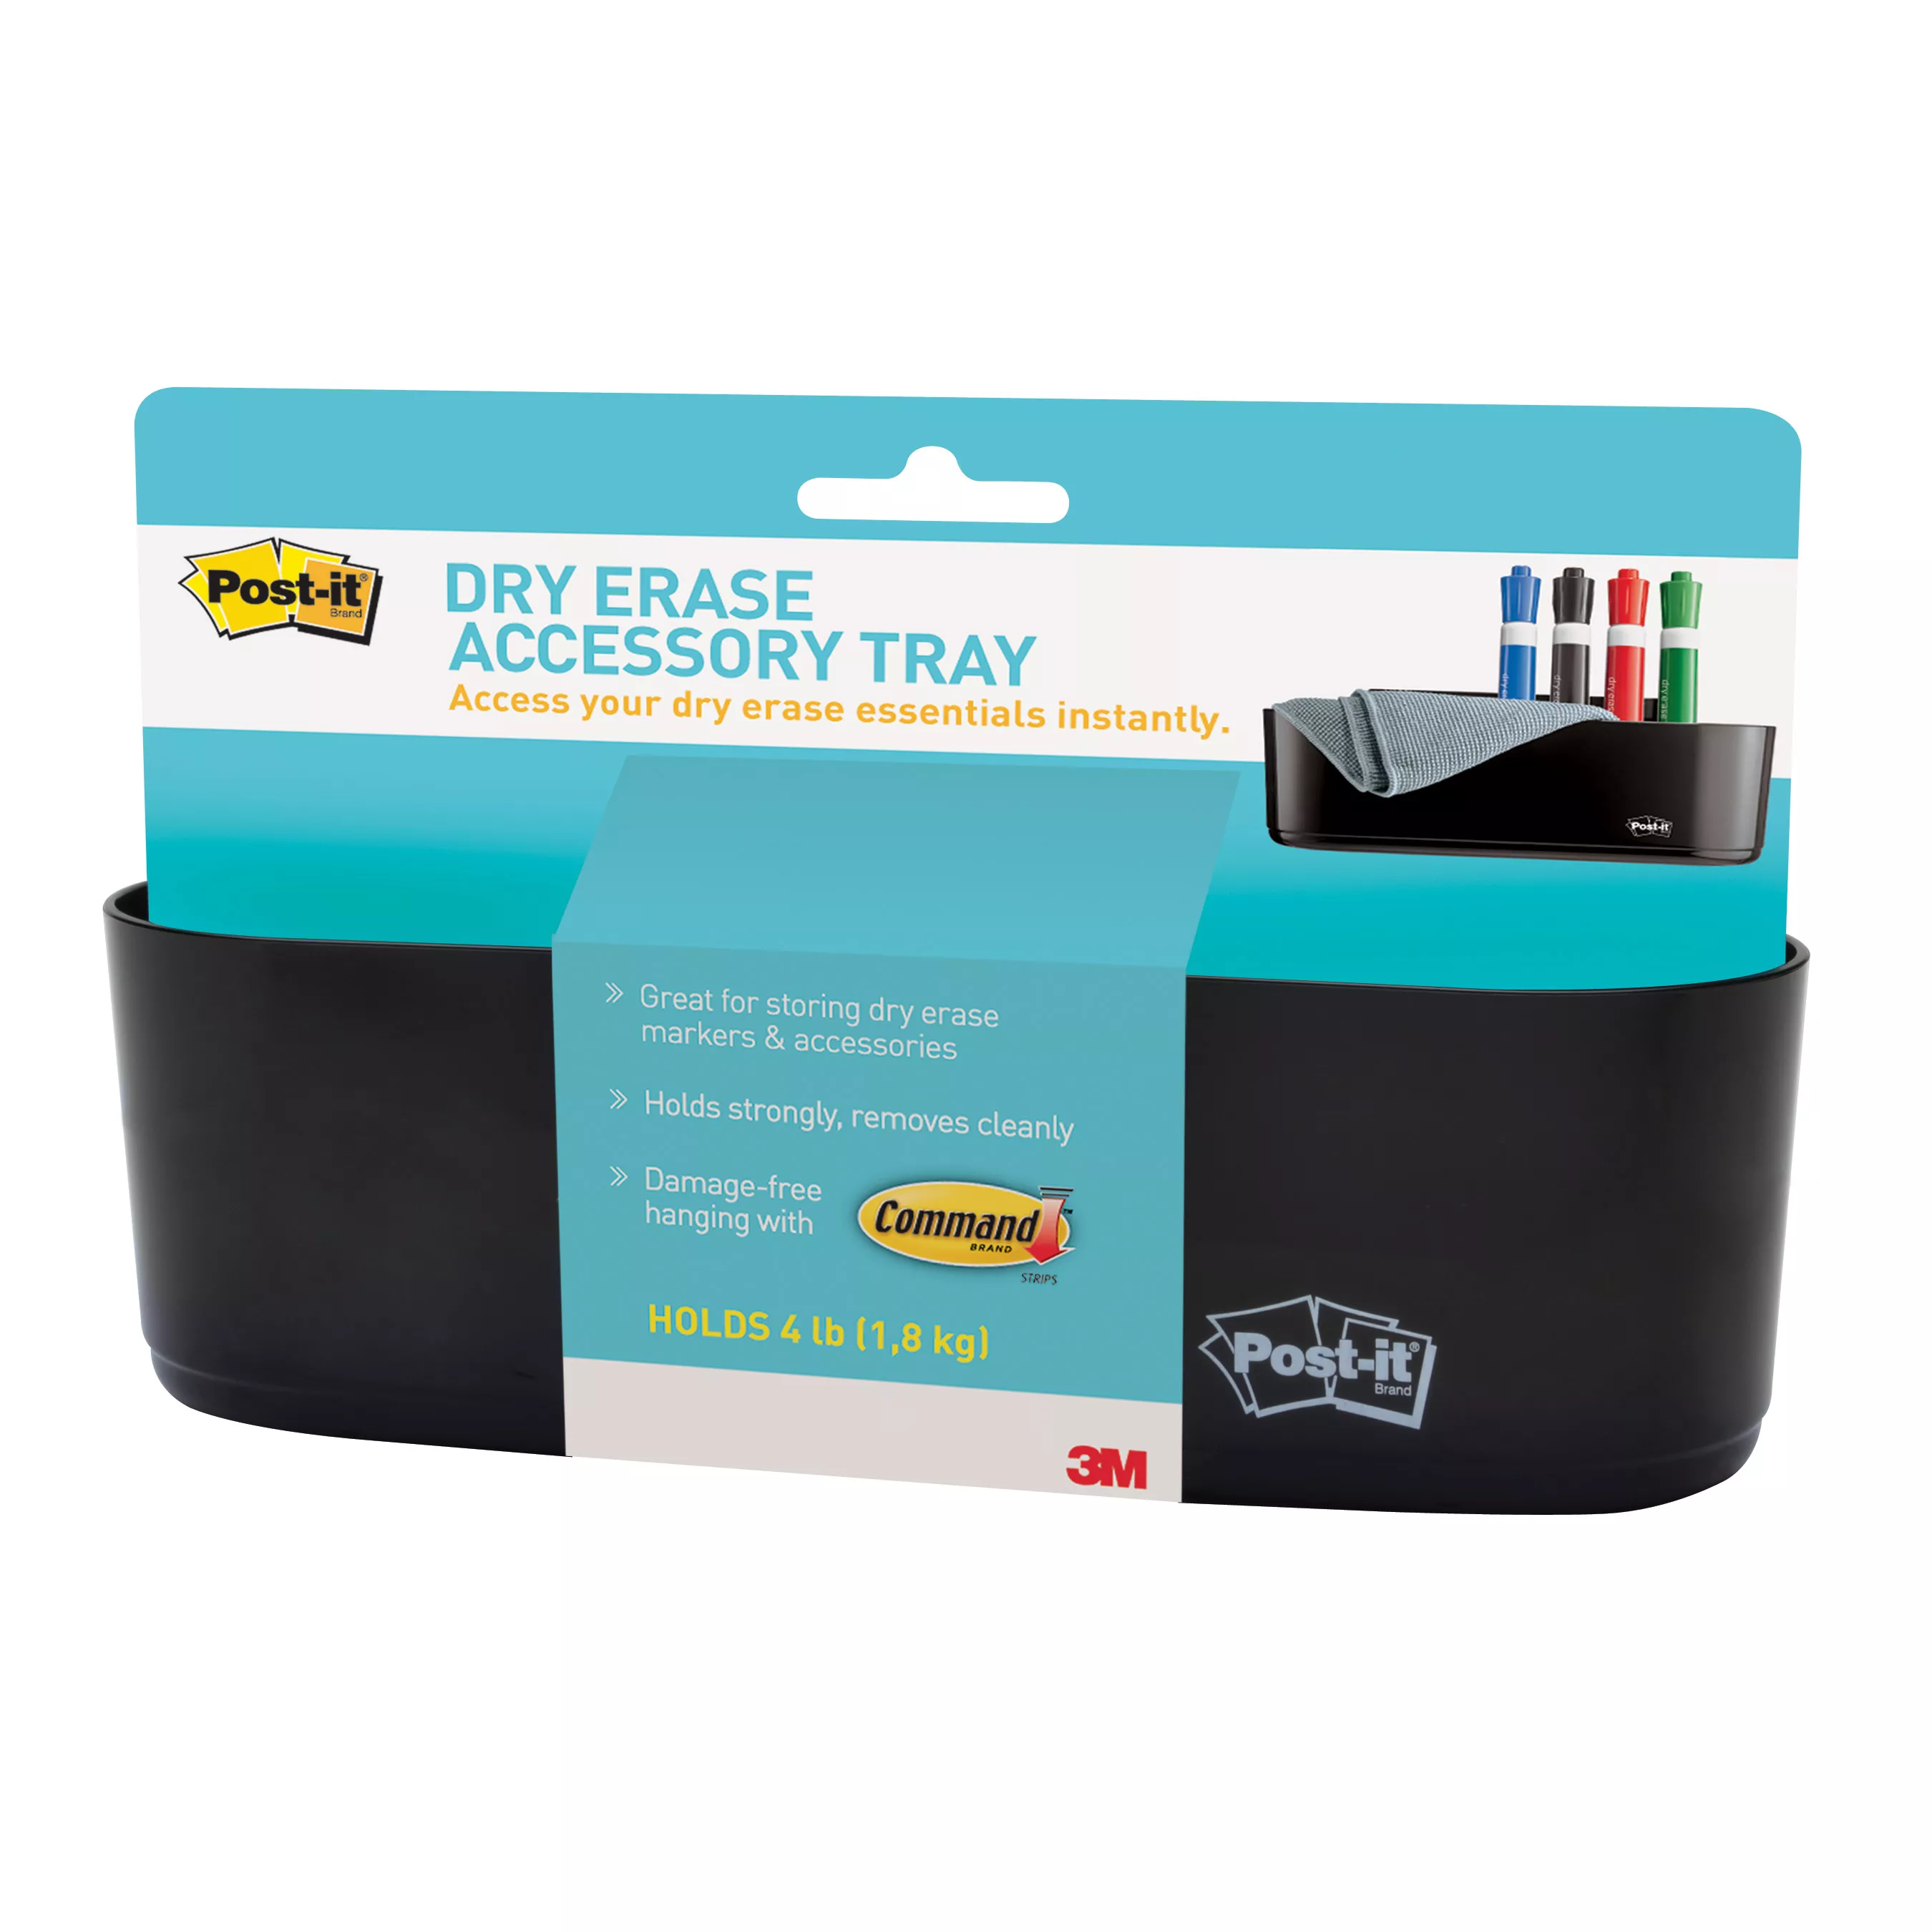 UPC 00051141986388 | Post-it® Dry Erase Accessory Tray DEFTRAY